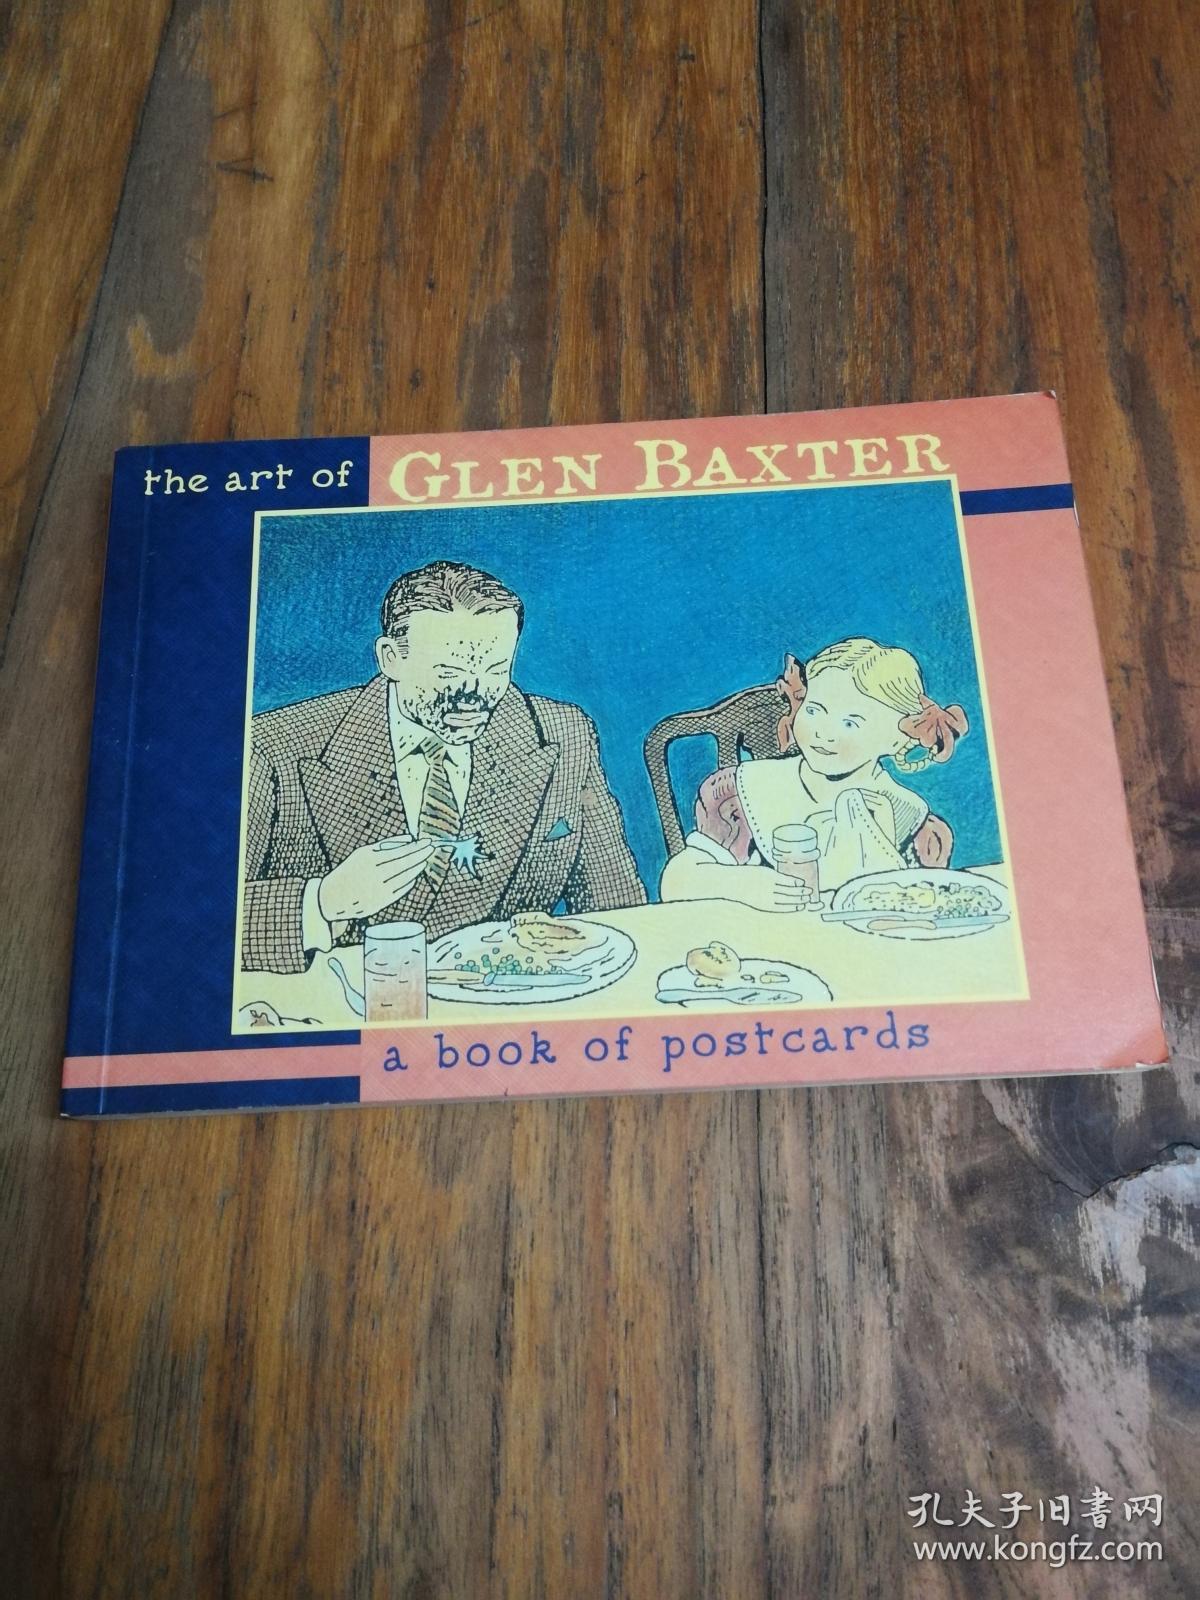 The Art of Glen Baxter